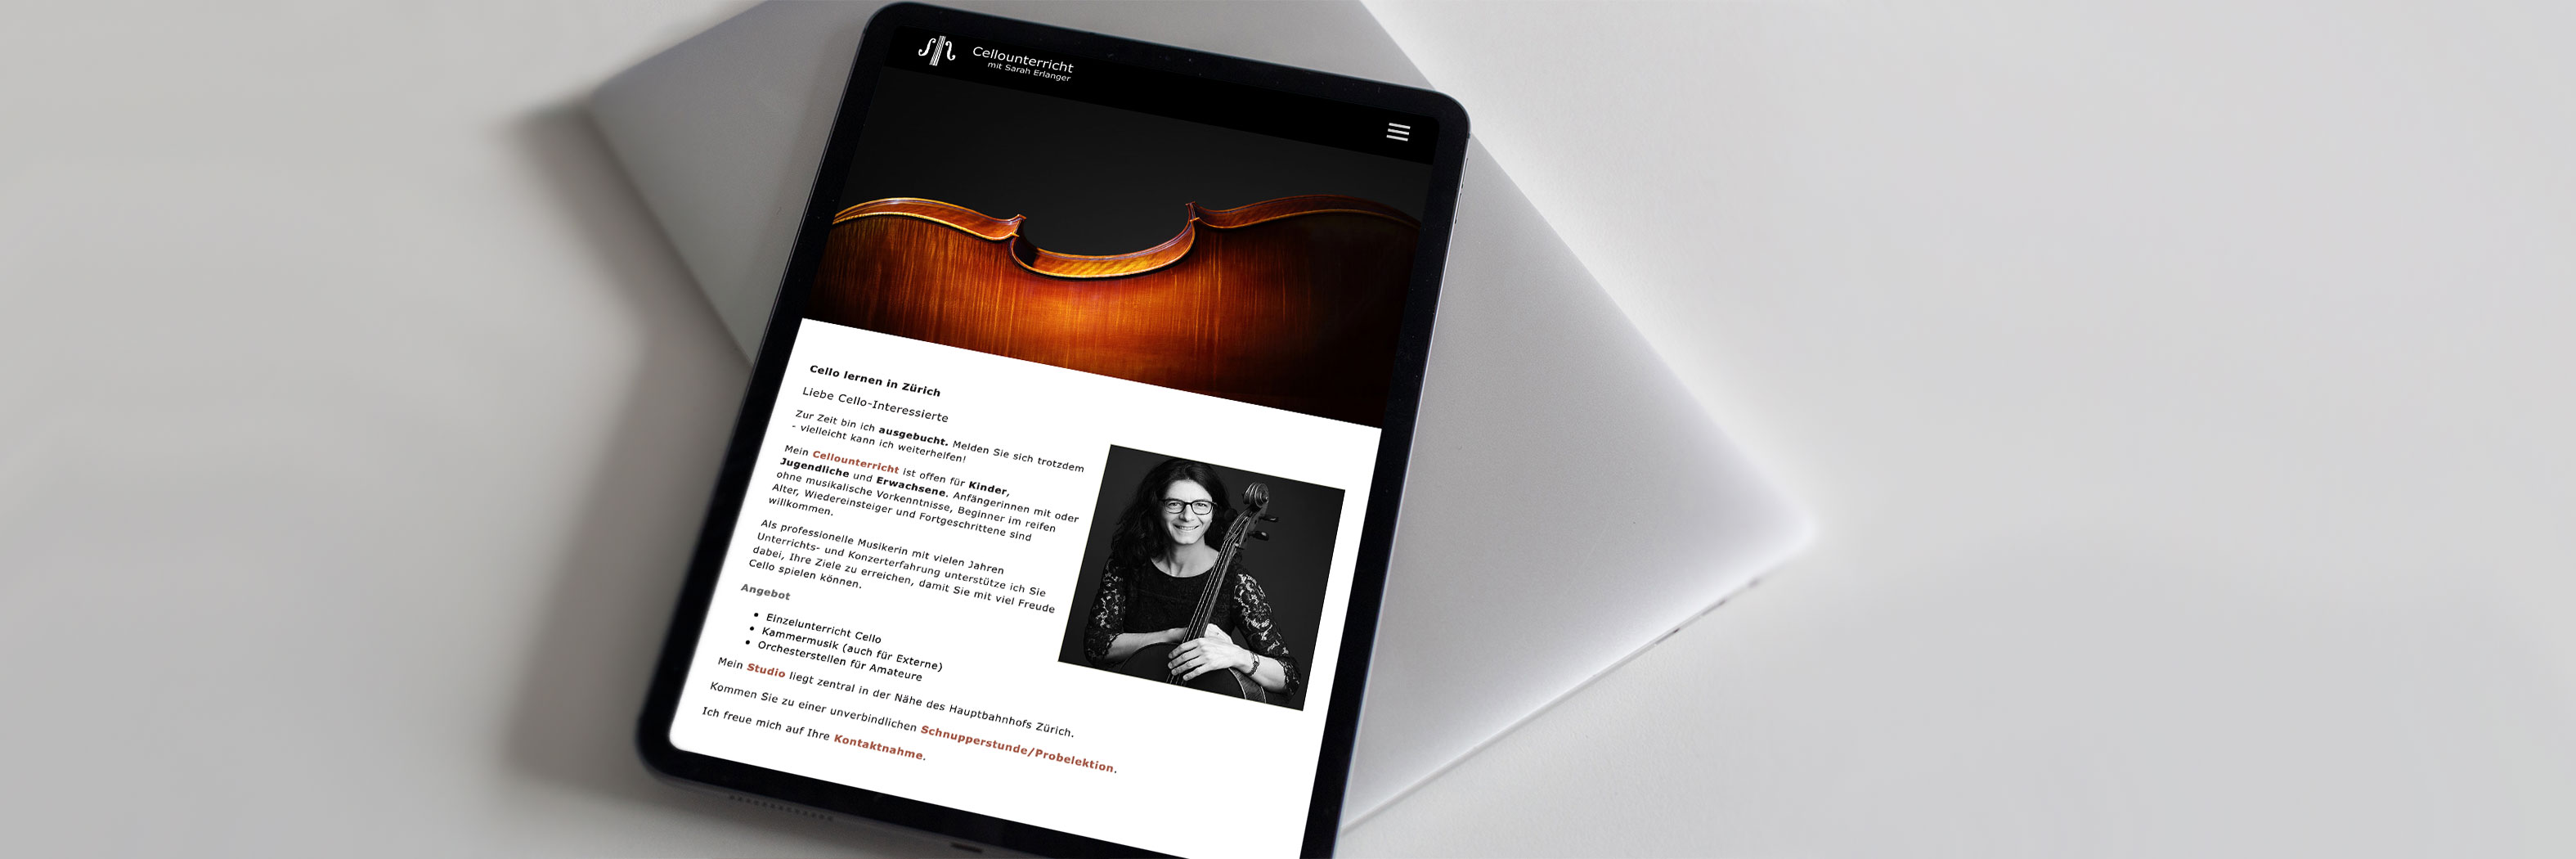 Website Cellounterricht by Sarah Erlanger